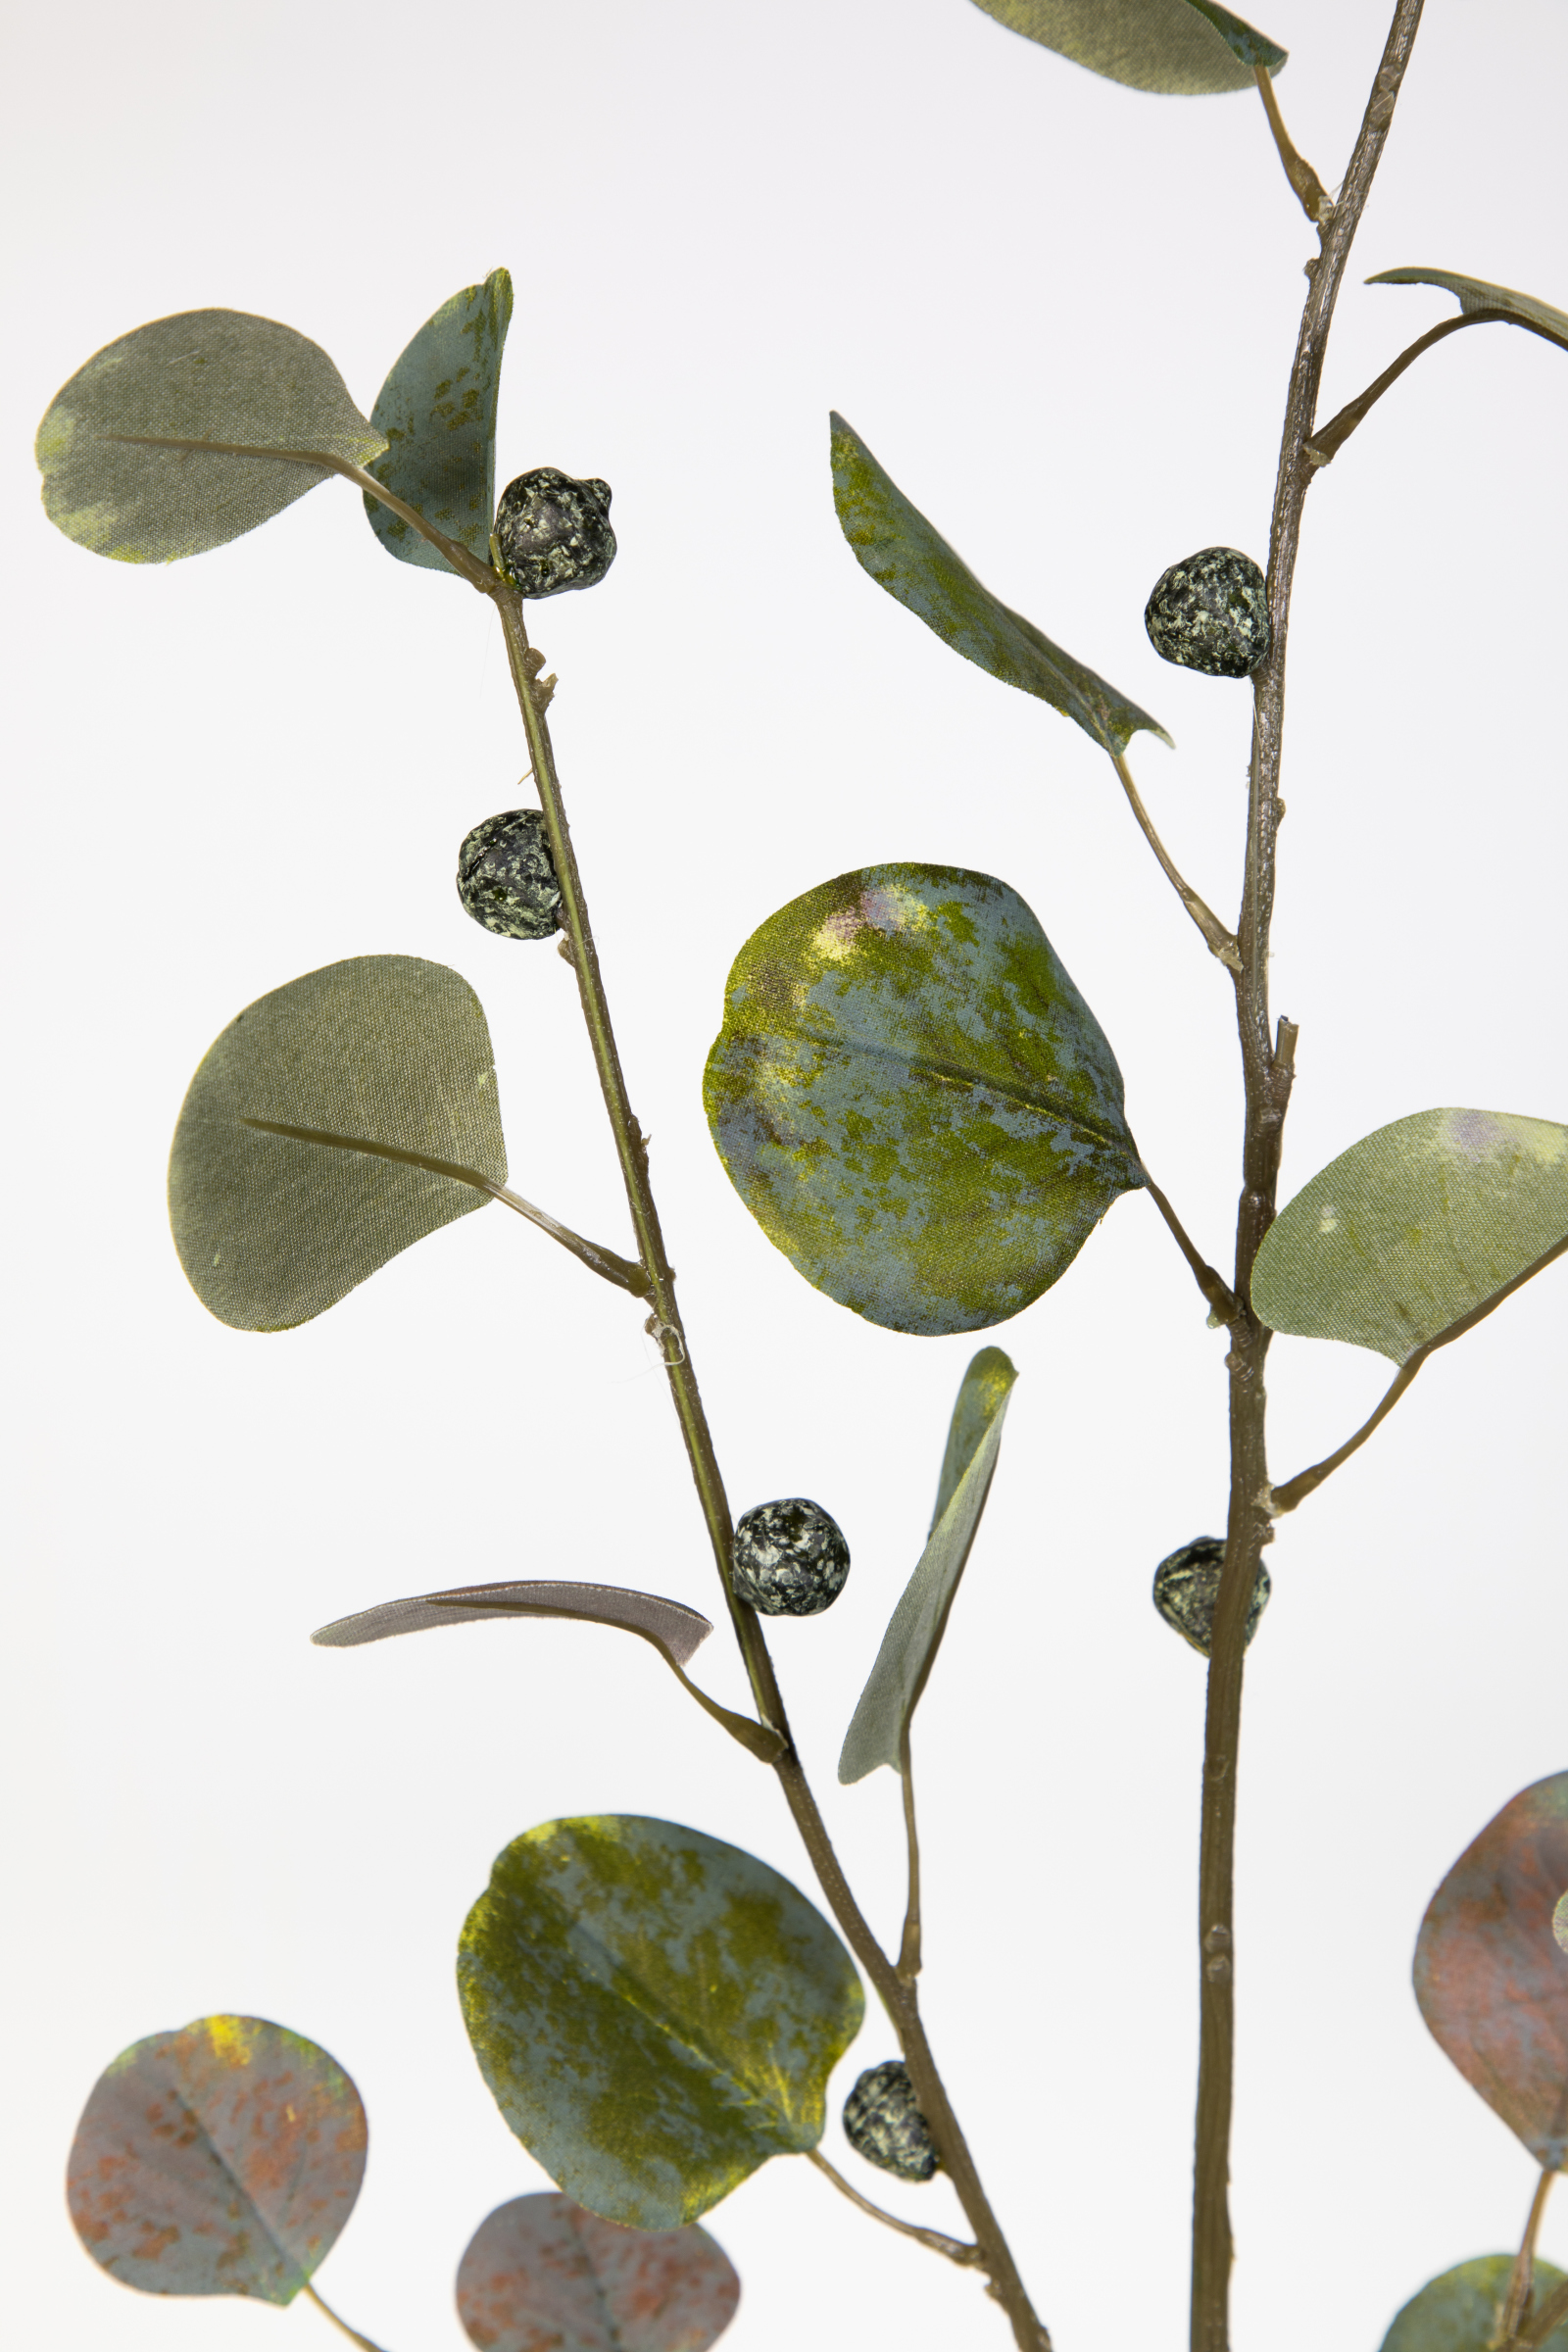 Eukalyptuszweig mit Früchten 110cm JA Kunstzweig künstliche grün Zweige künstlicher Eukalyptus